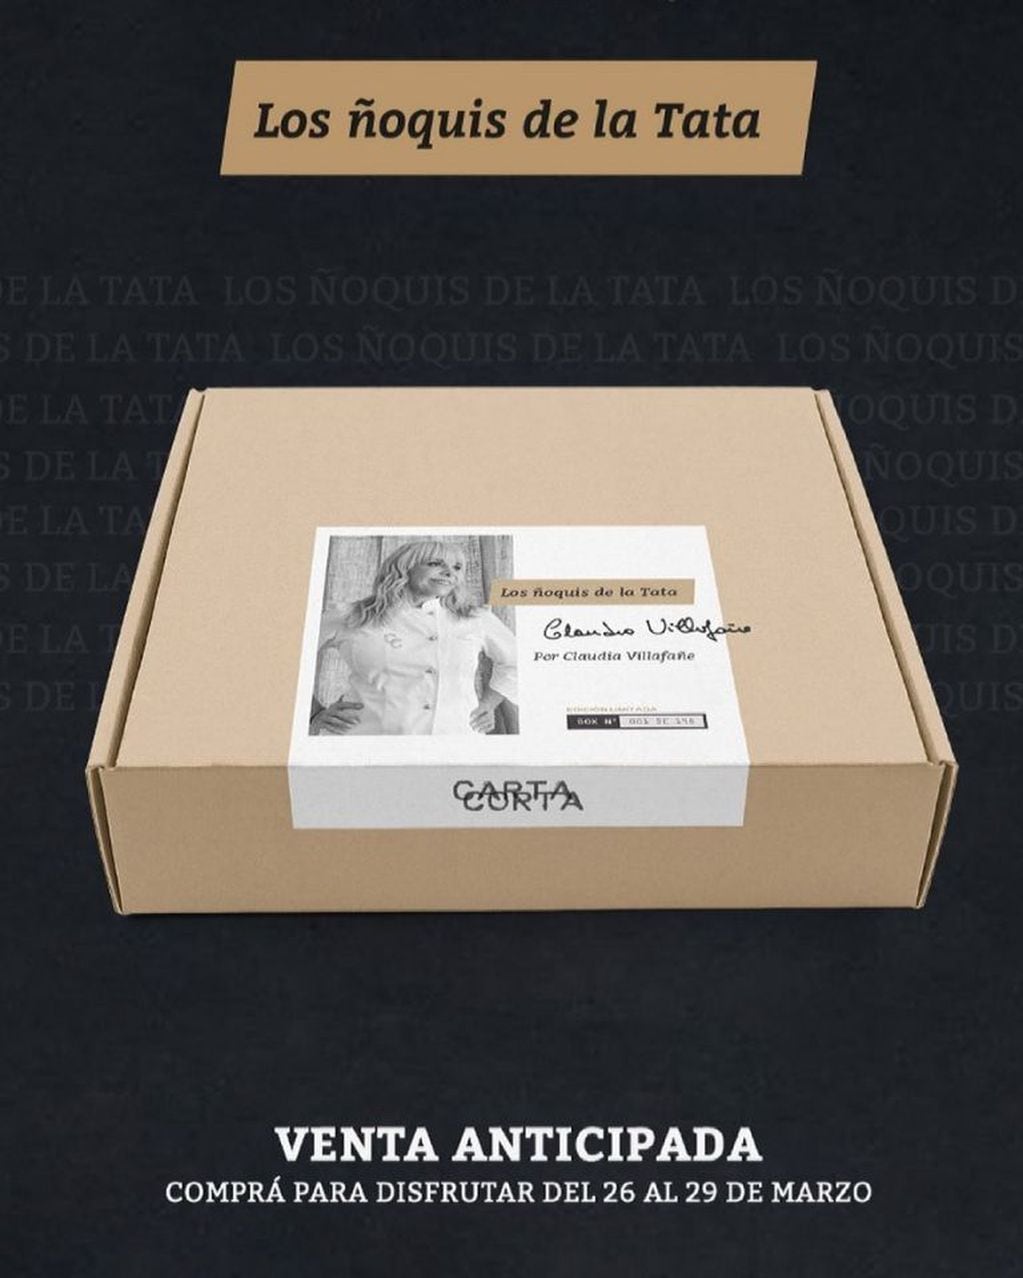 La box especial de los ñoquis de Claudia Villafañe.